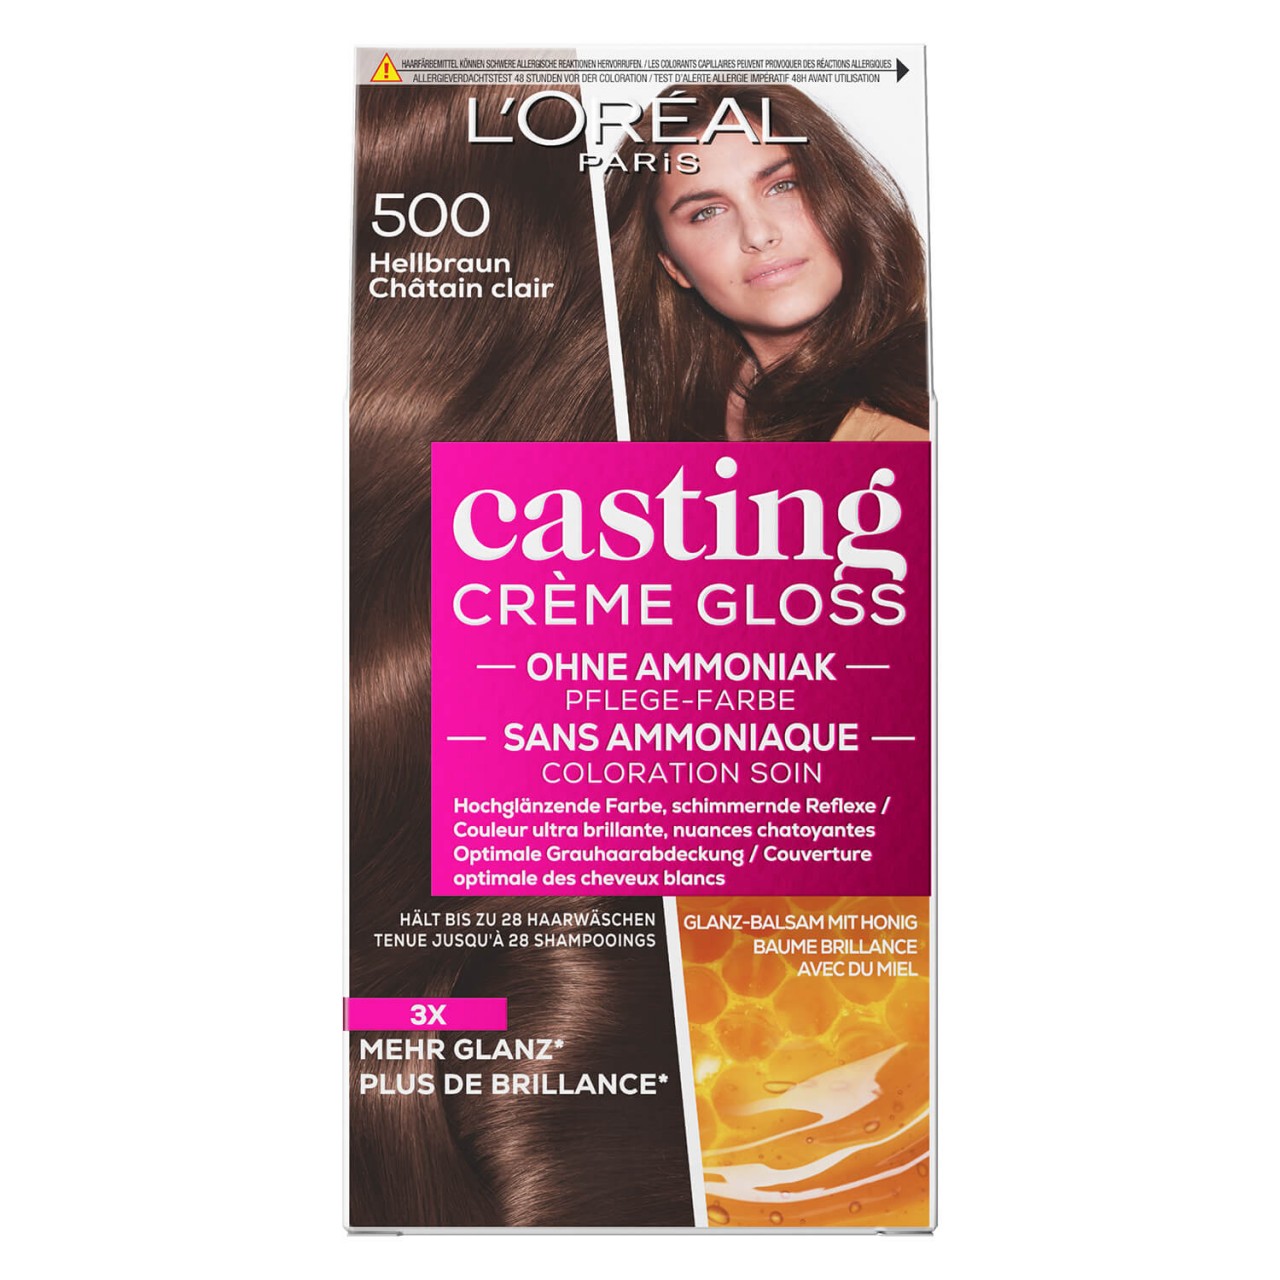 LOréal Casting - Crème Gloss 500 Hellbraun von L'Oréal Paris